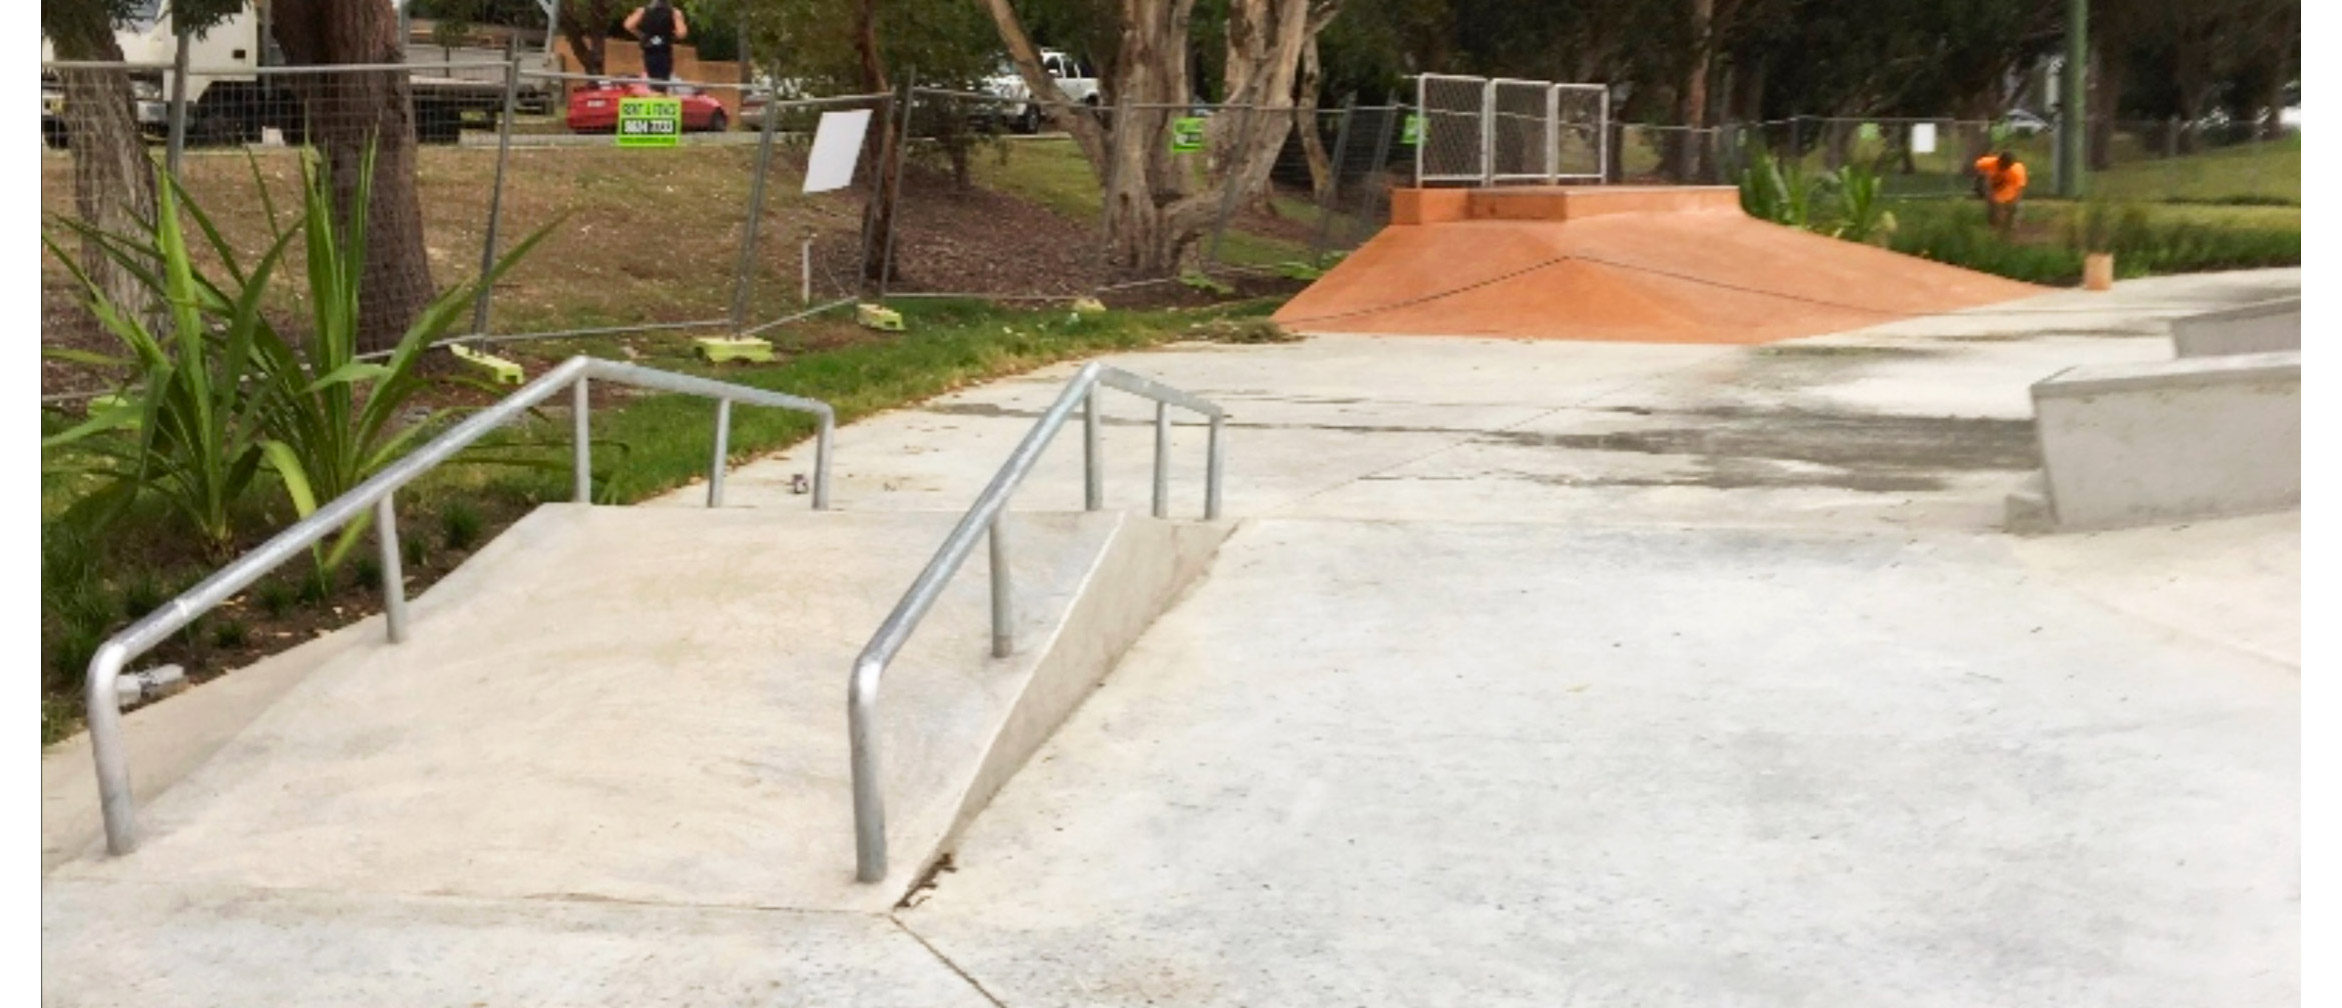 Cromer skate park A frame rail